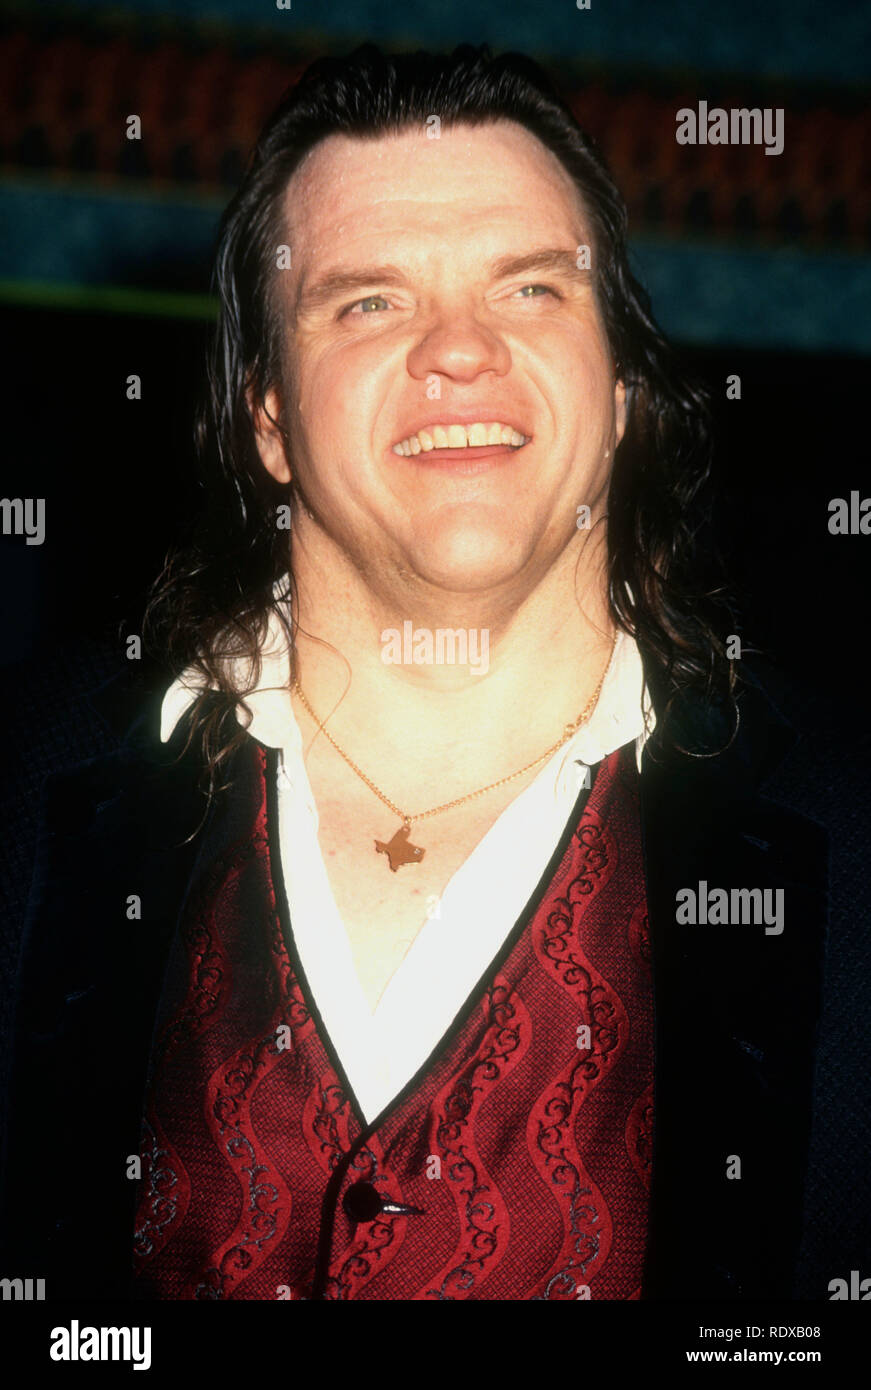 LOS ANGELES, Ca - 2. Oktober: Sänger Meat Loaf, aka Michael Lee Aday nimmt NBC taping von '70er Feier: Der Beat ist Zurück" am 2. Oktober 1993 im Wiltern Theater in Los Angeles, Kalifornien. Foto von Barry King/Alamy Stock Foto Stockfoto